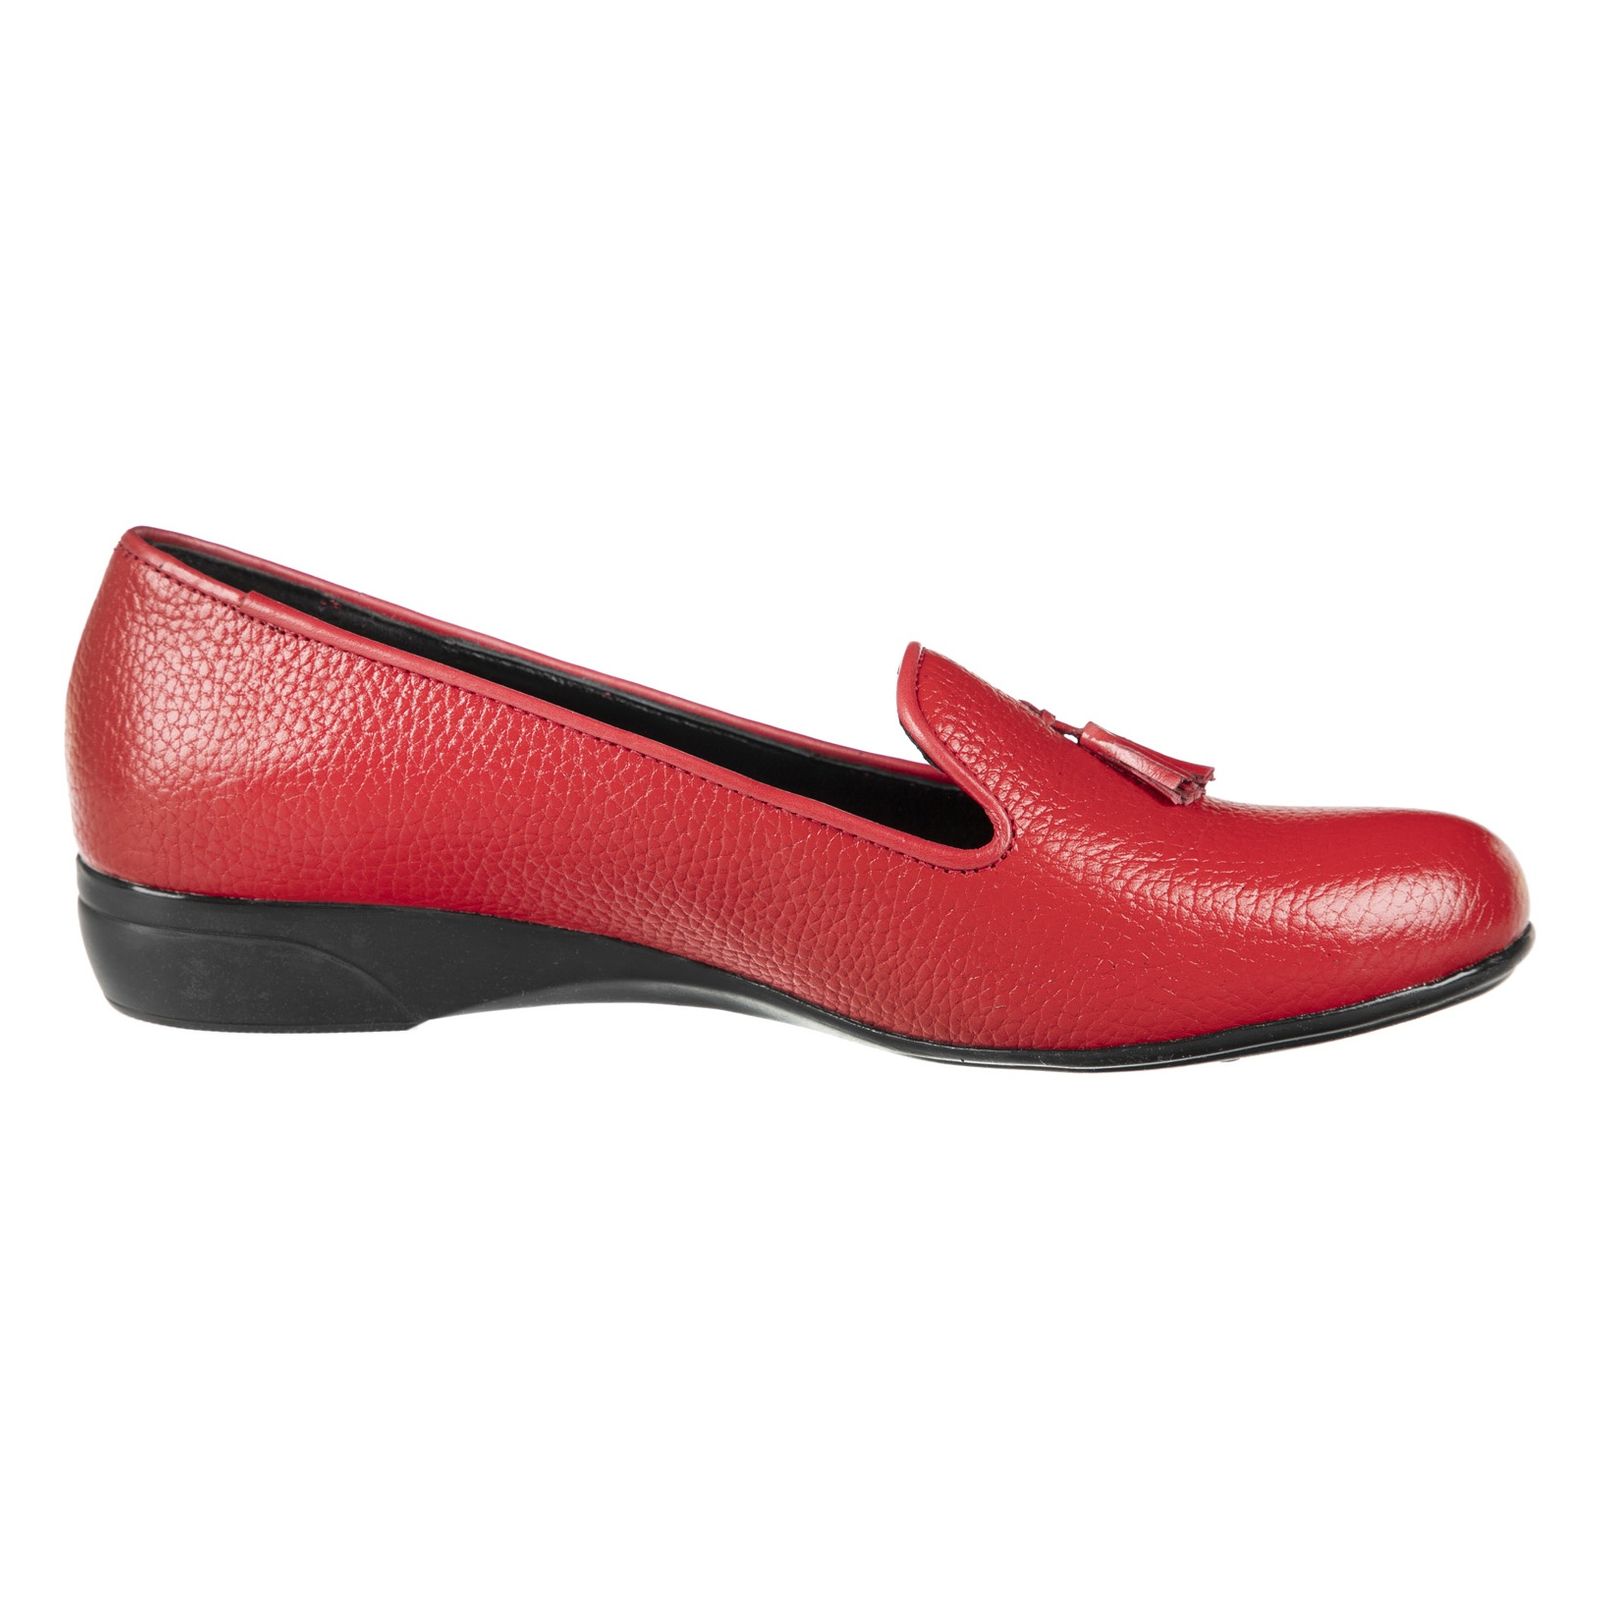 کفش زنانه دلفارد مدل 5183A500-102 - قرمز - 3